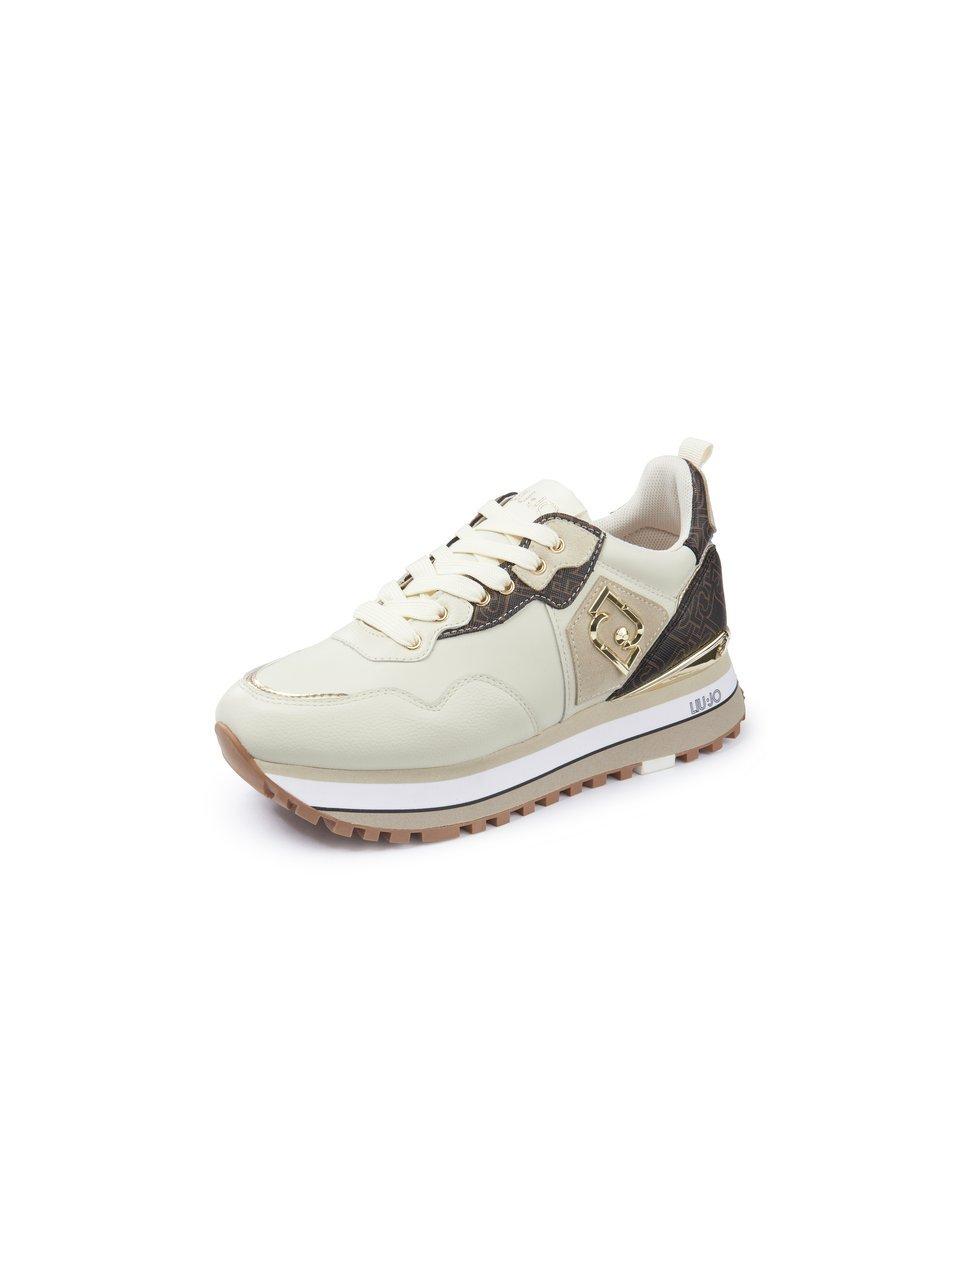 Liu Jo Maxi Wonder 01 Leren Platform Sneakers Dames - Bruin - Maat 40